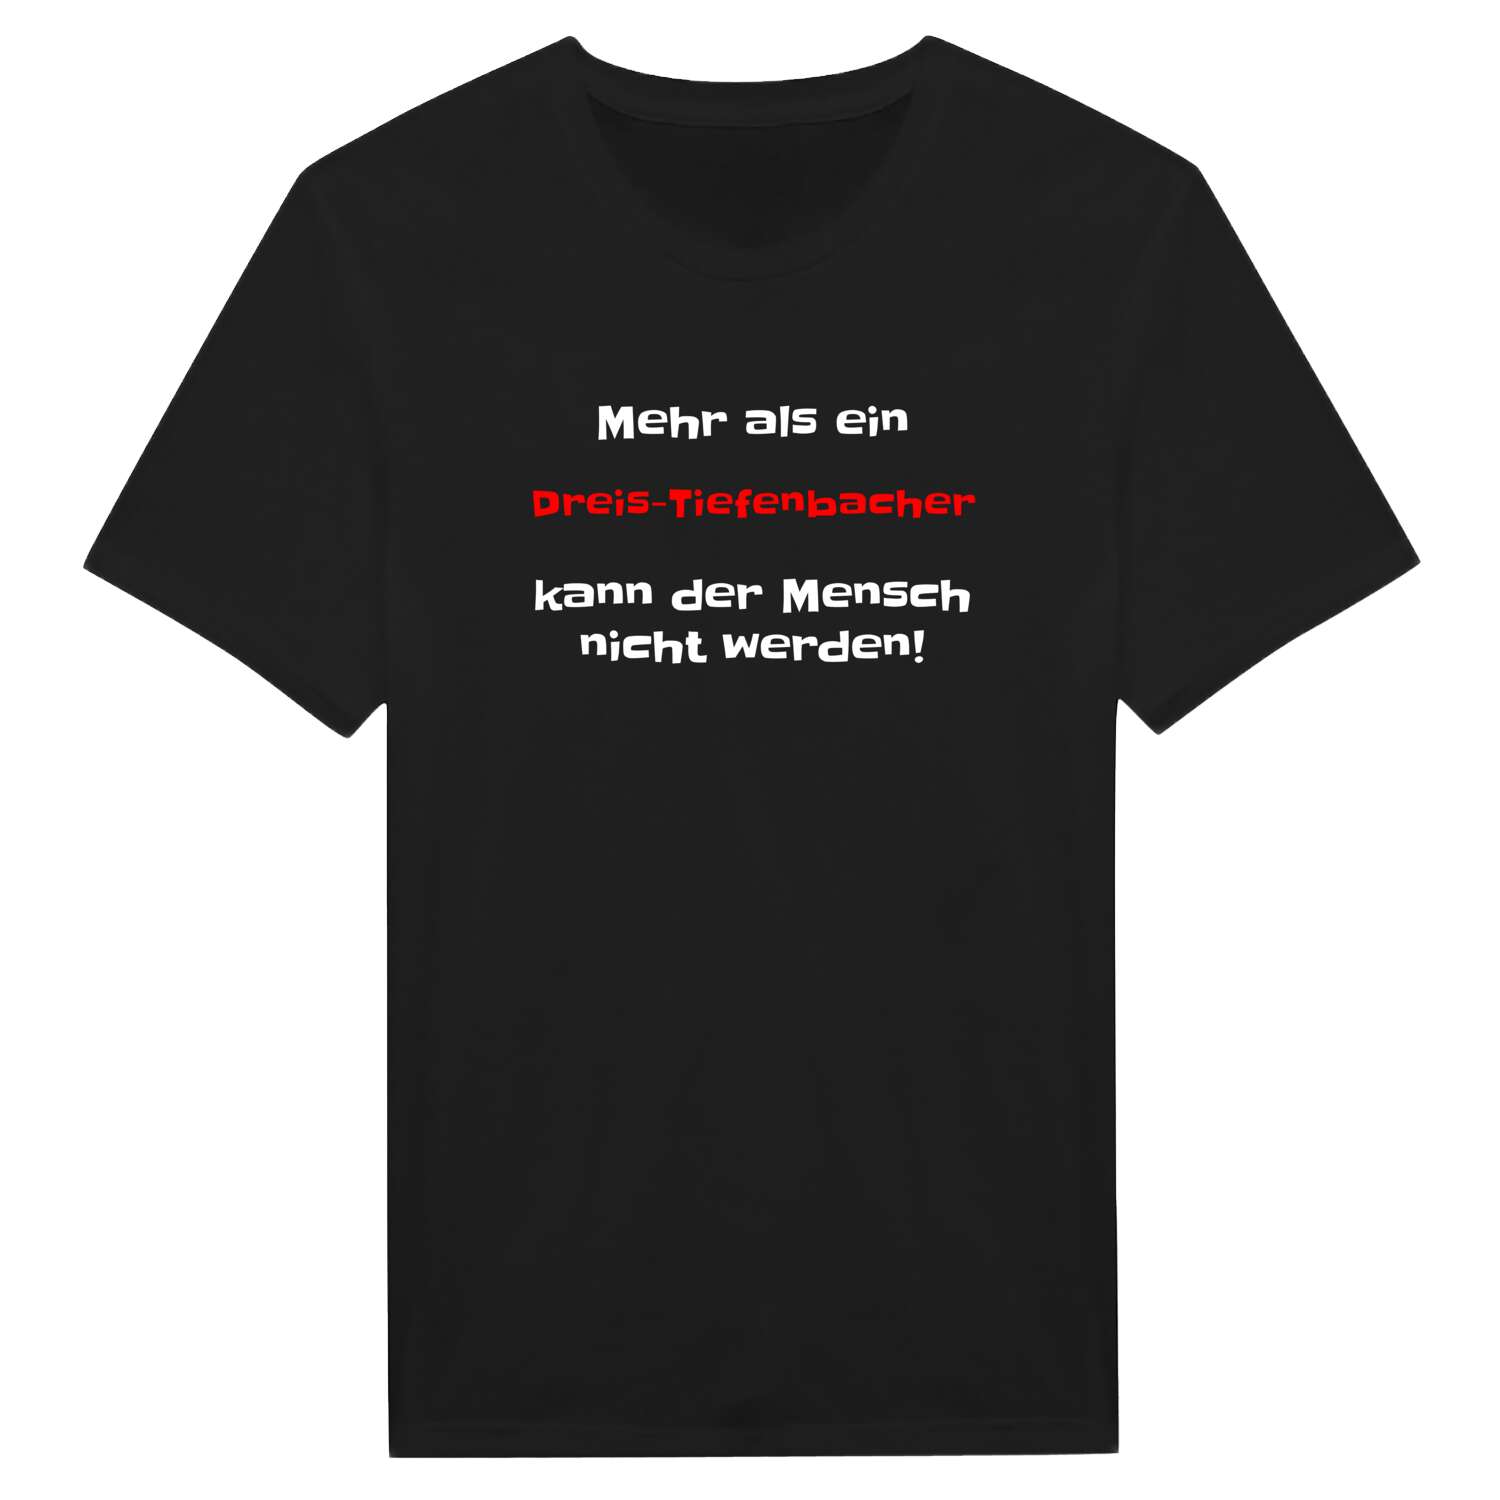 Dreis-Tiefenbach T-Shirt »Mehr als ein«